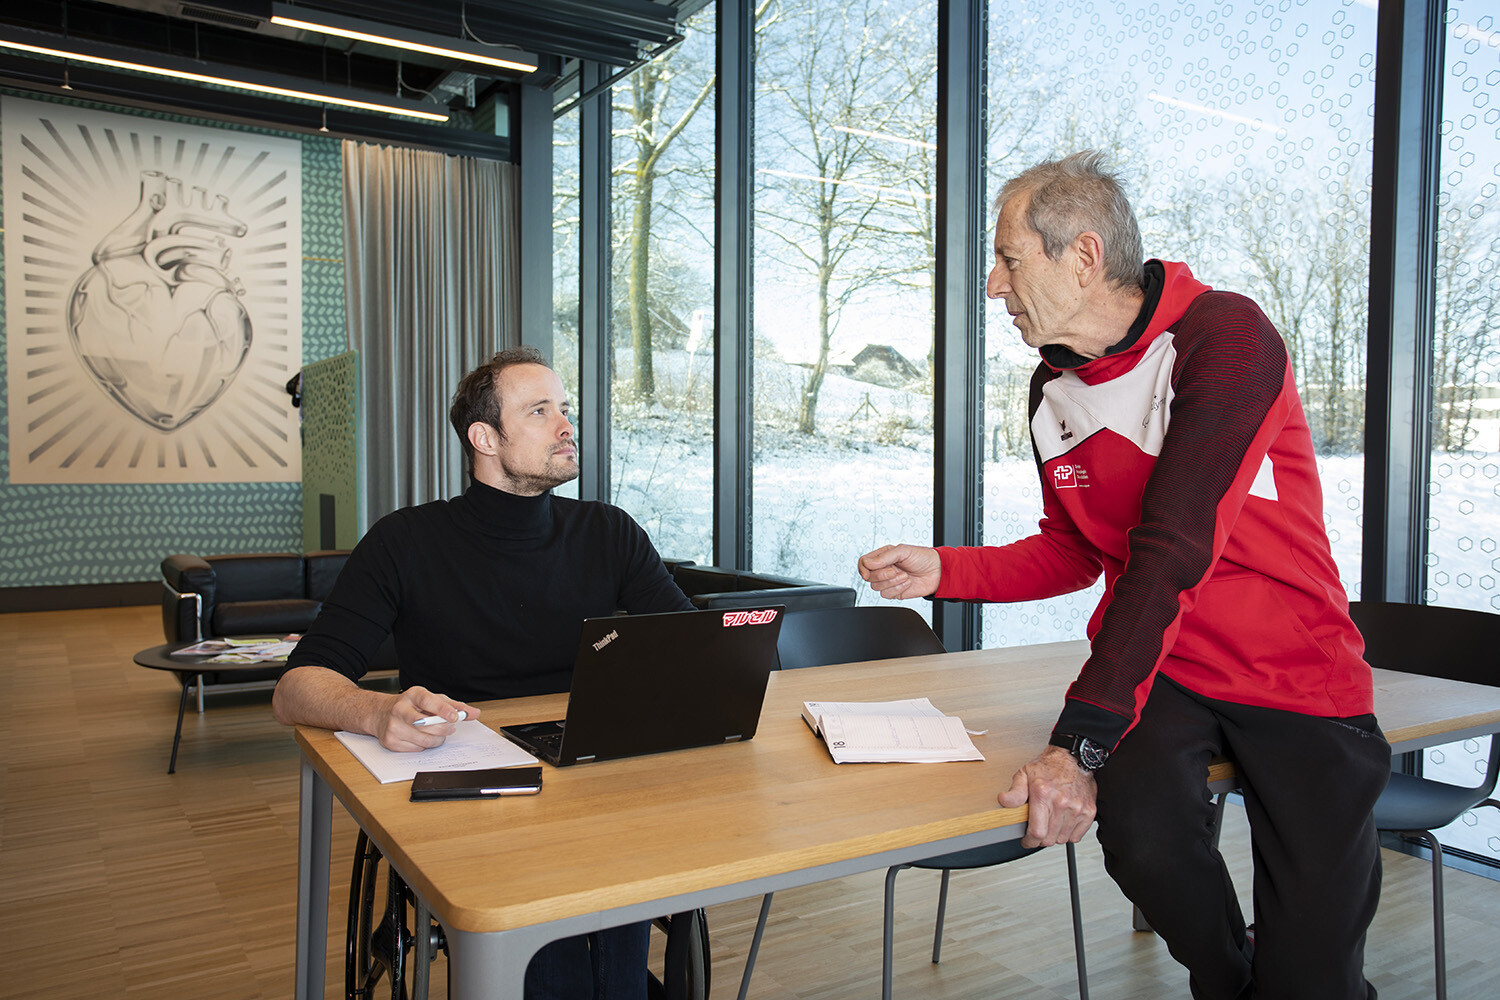 Links sitzt Marcel Hug in einem schwarzen Rollkragenpullover an einem Tisch, vor ihm Laptop und Block. Rechts sitzt sein Trainer Paul Odermatt in roter Trainerjacke lässig auf dem Tisch. Die beiden unterhalten sich.